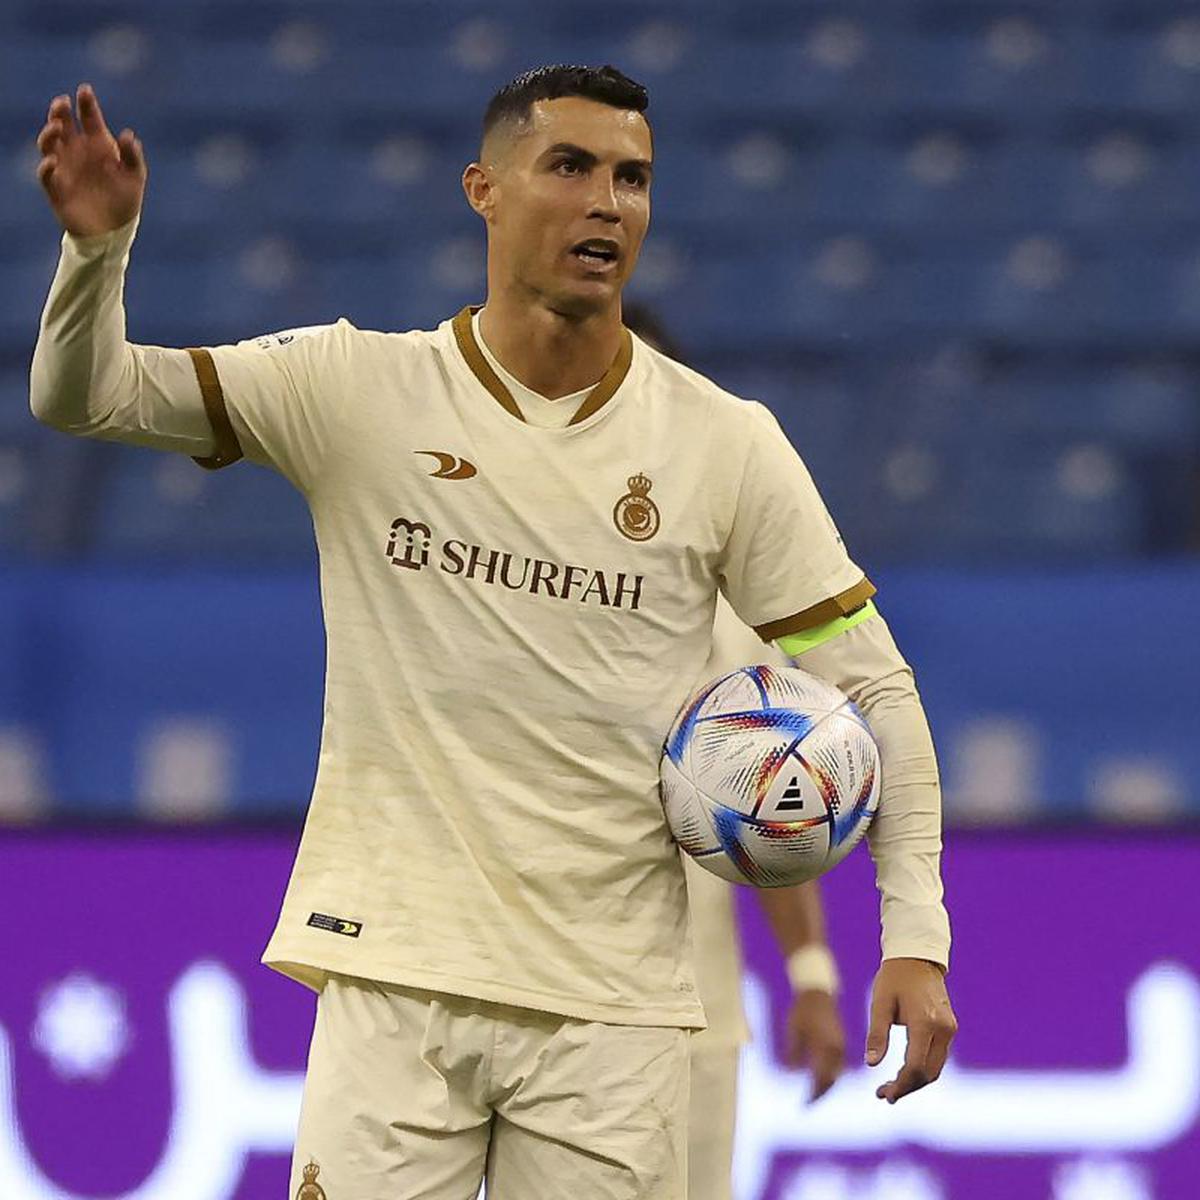 El Deportísimo - El enorme gesto de los compañeros mostrando la camiseta de  Cristiano Ronaldo Jr. en forma de apoyo, tras ausentarse por lesión, al  partido de la Sub-15 del Al Nassr.